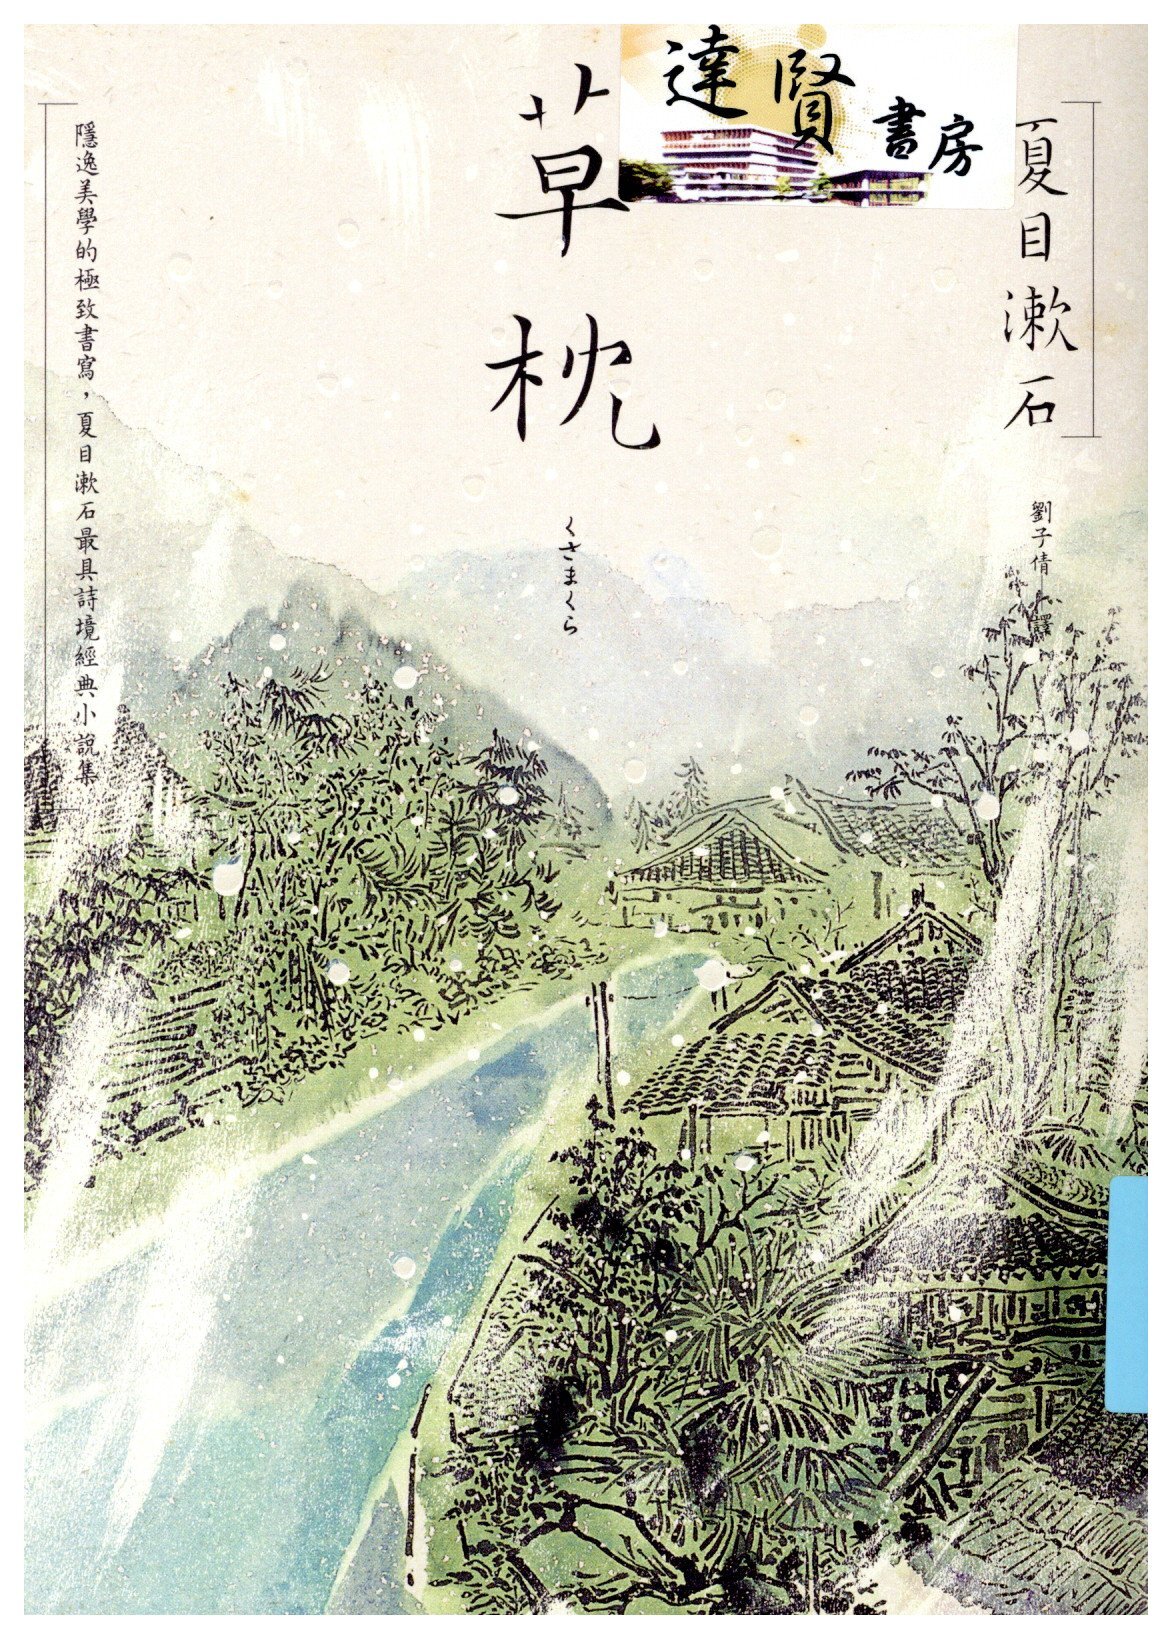 草枕 : 隱逸美學的極致書寫, 夏目漱石最具詩境經典小說集